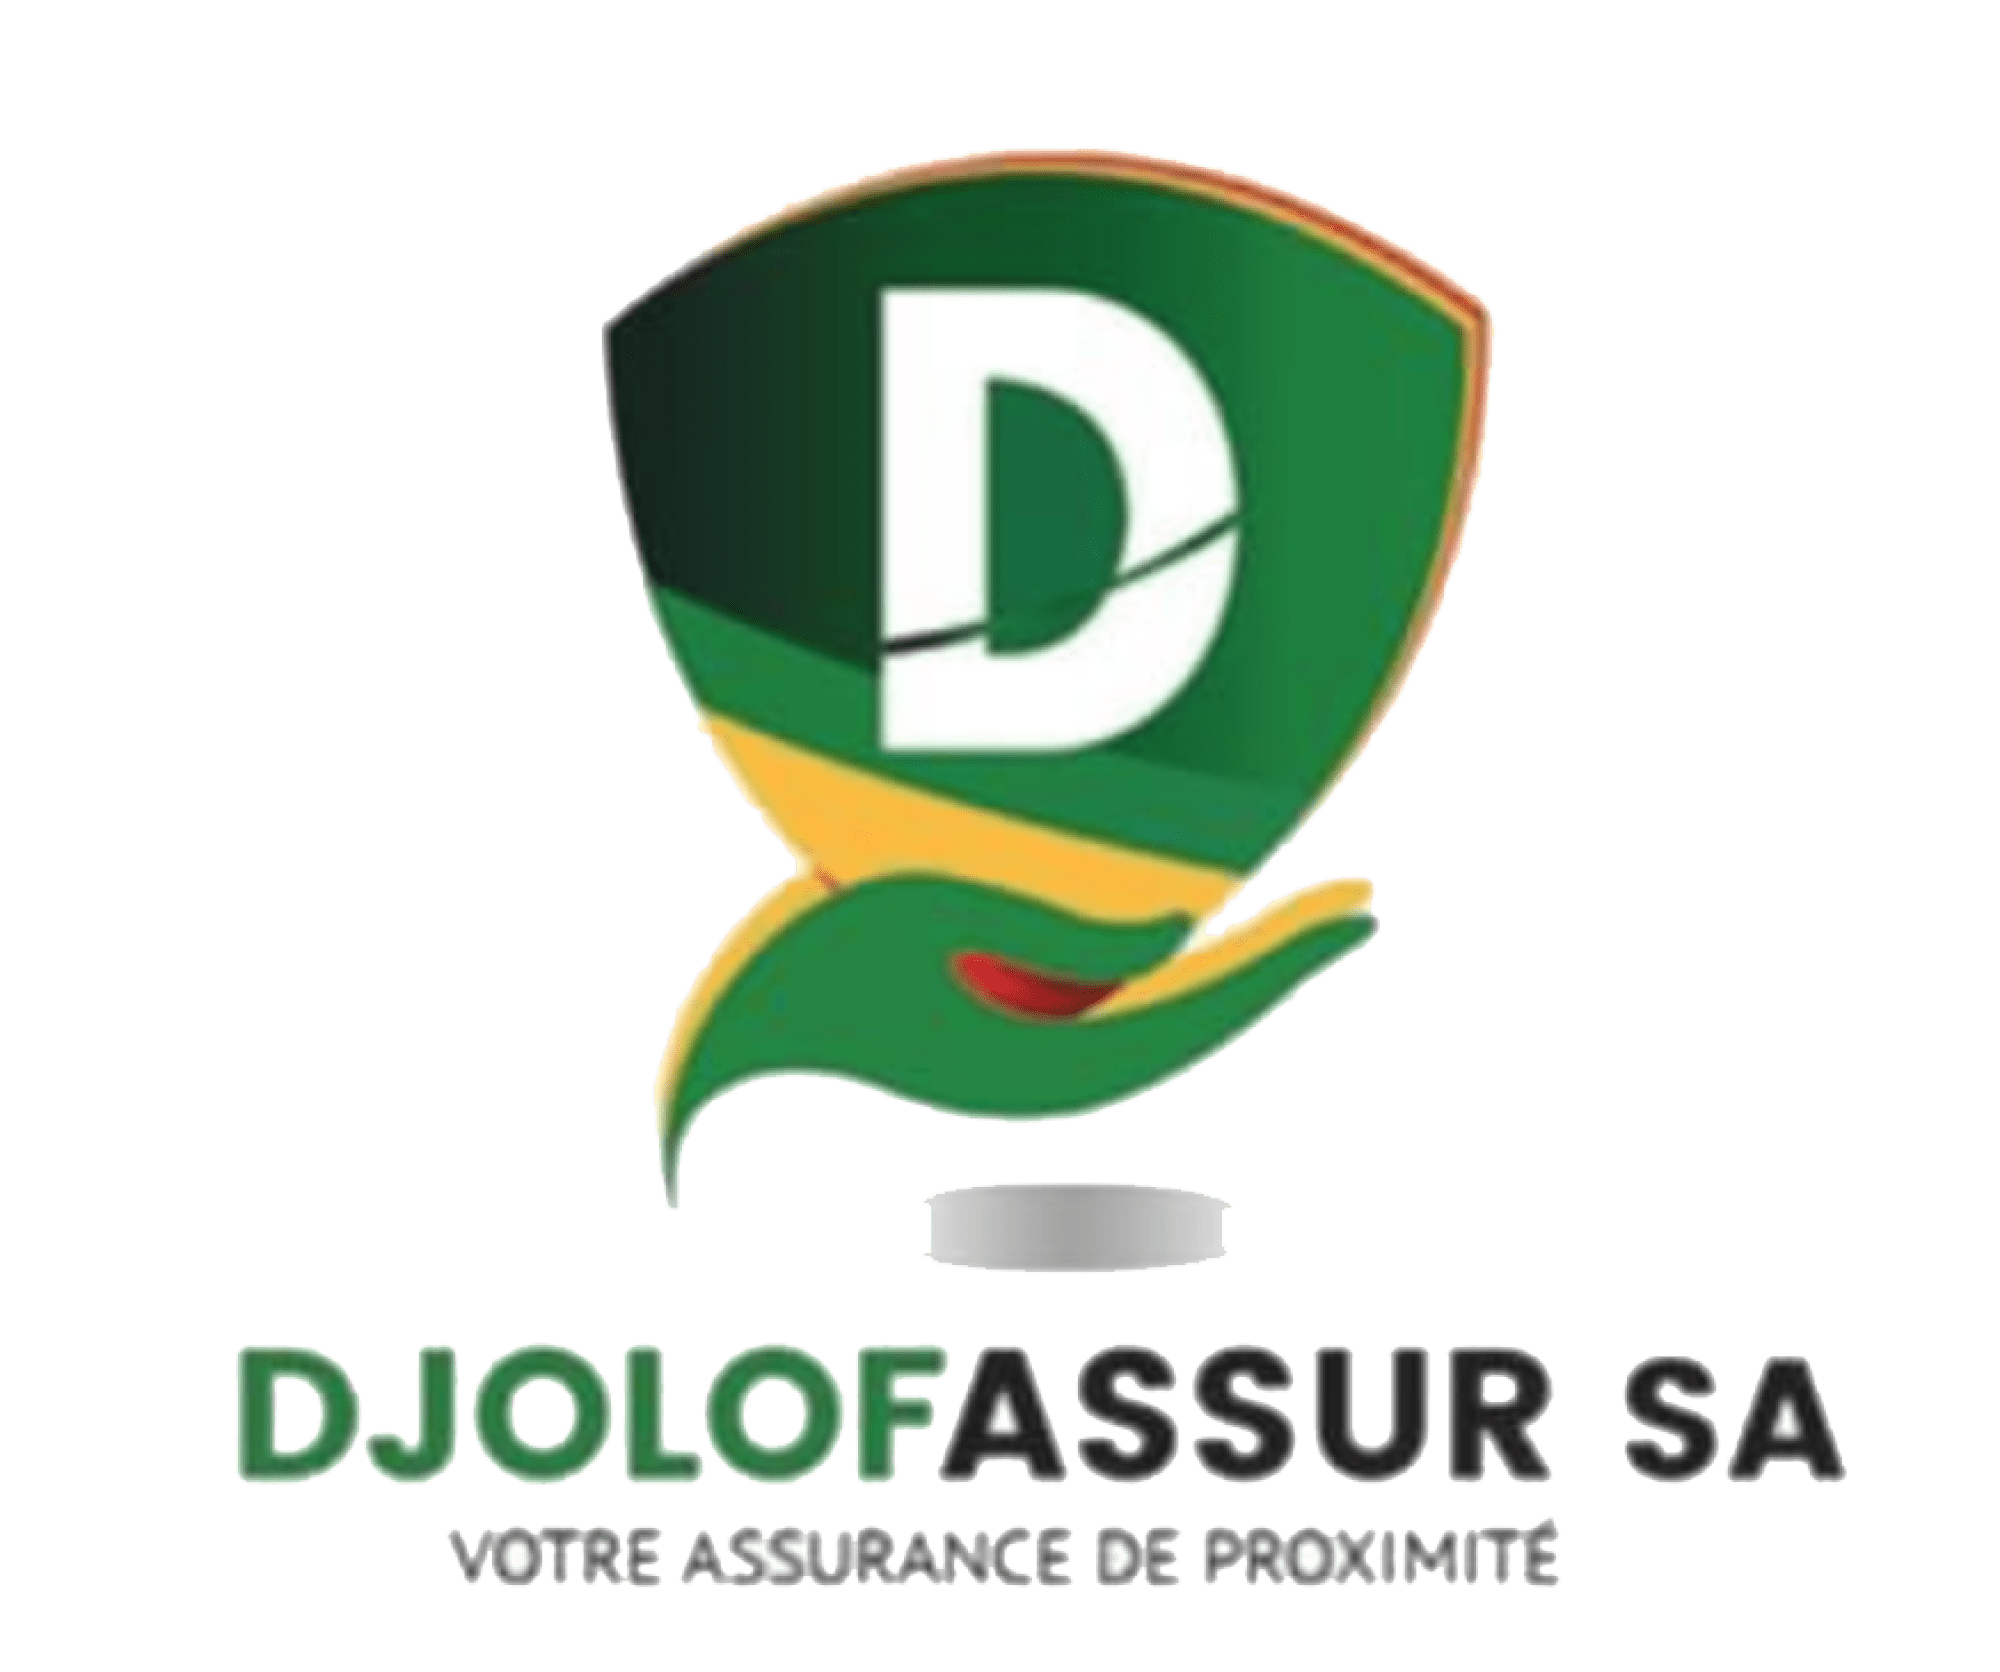 Djolof Assurance